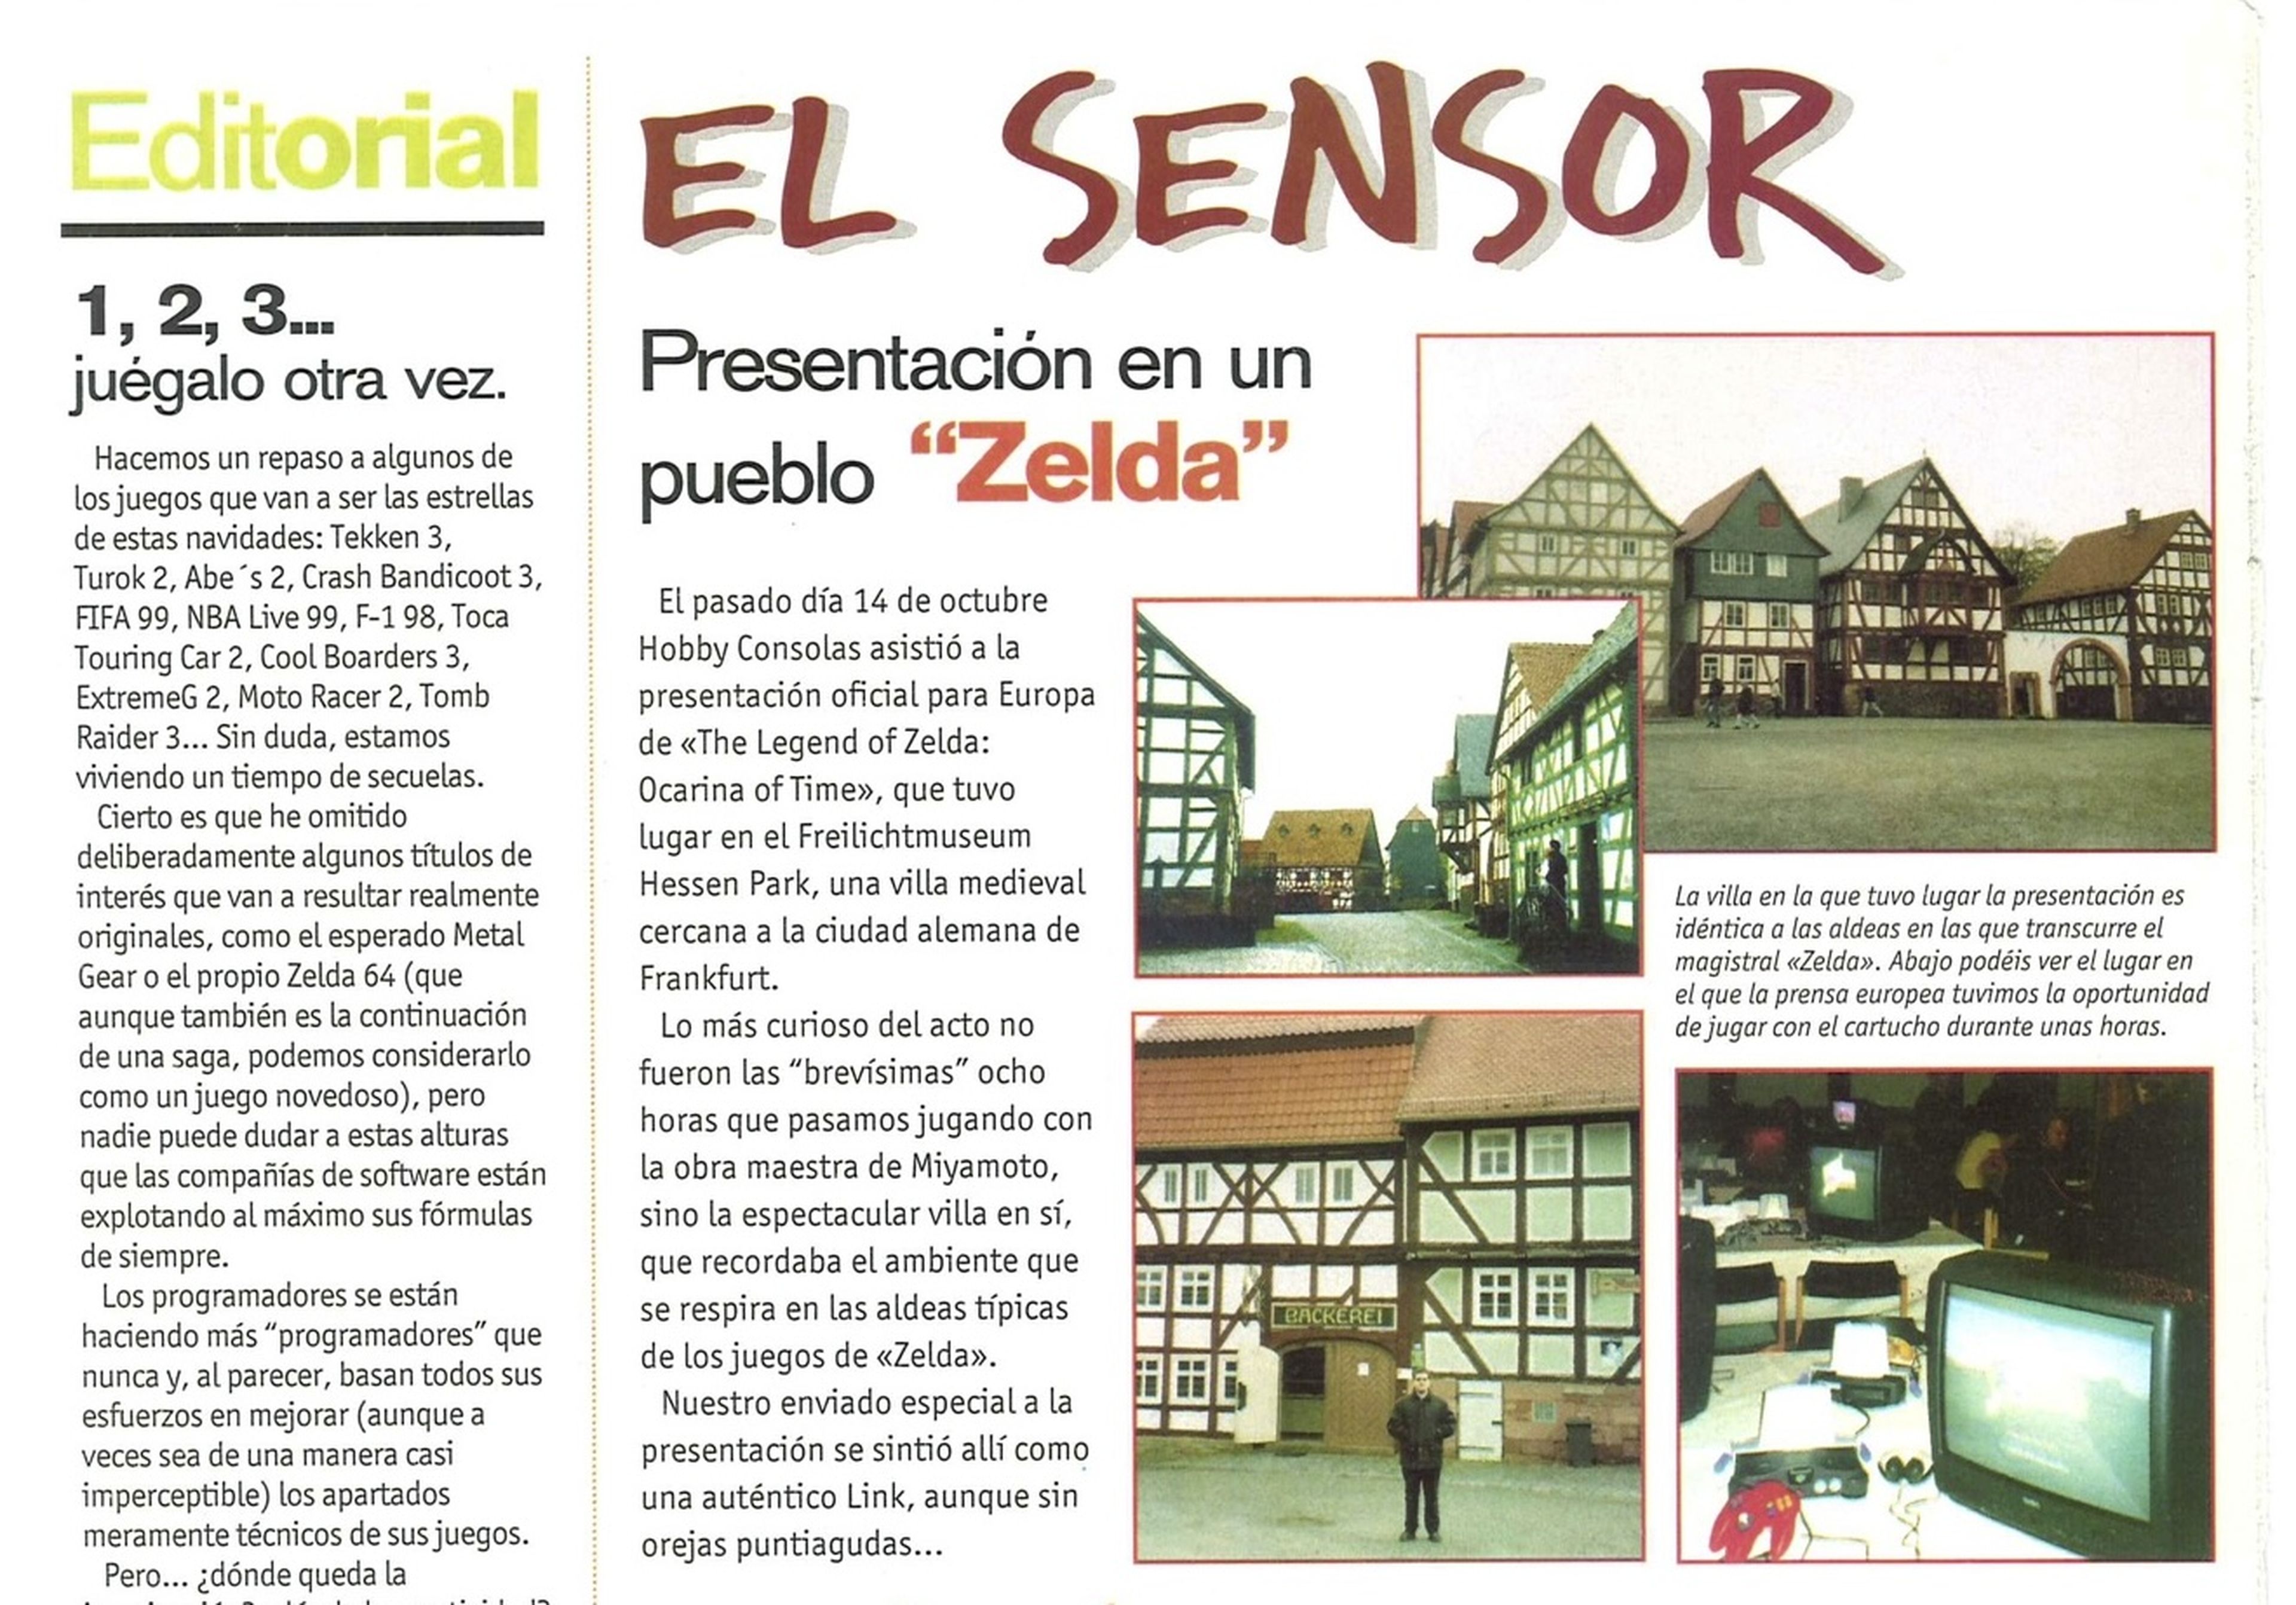 Presentación Zelda Ocarina of Time 1998